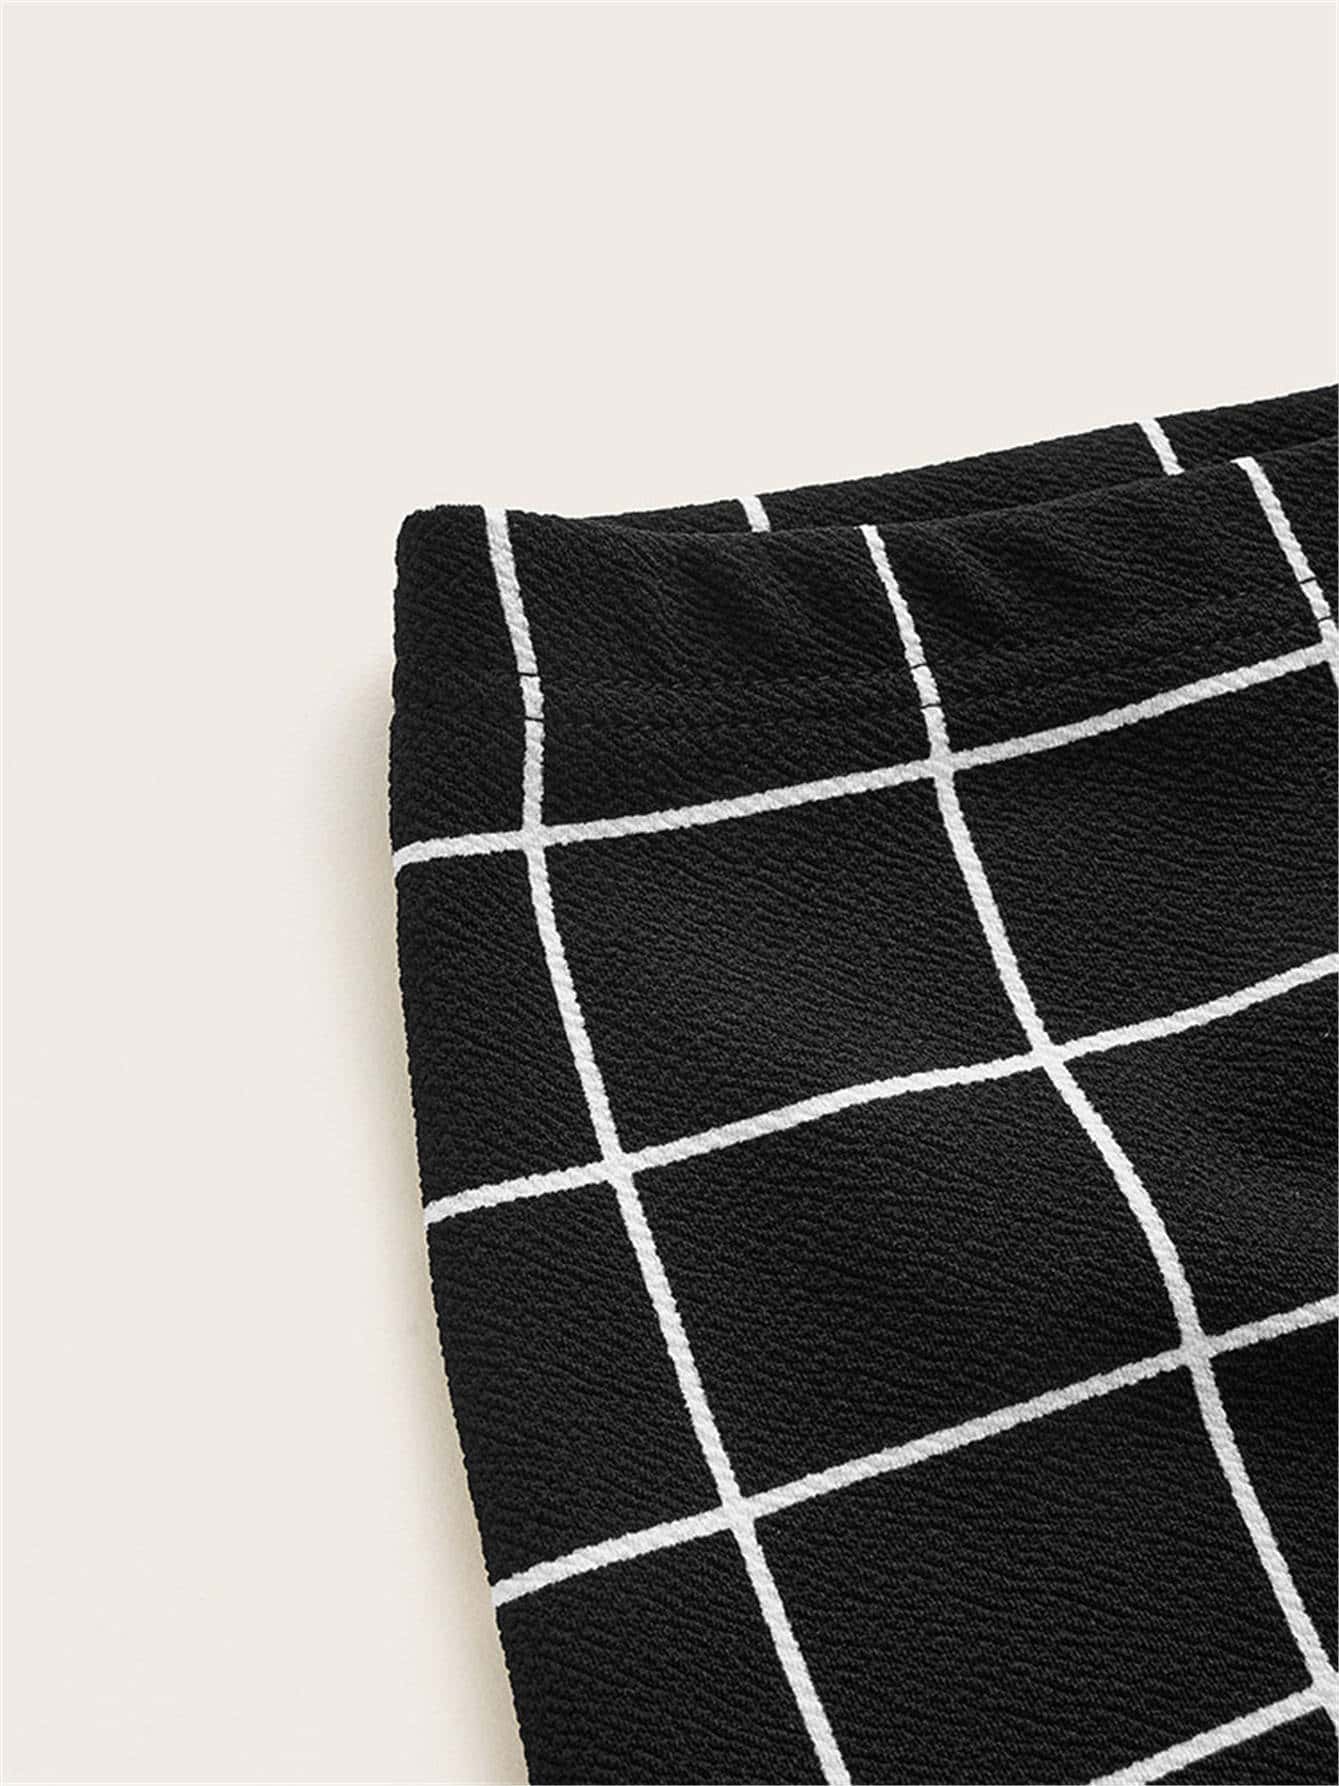 Mulvari Grid Pencil Skirt - Negative Apparel